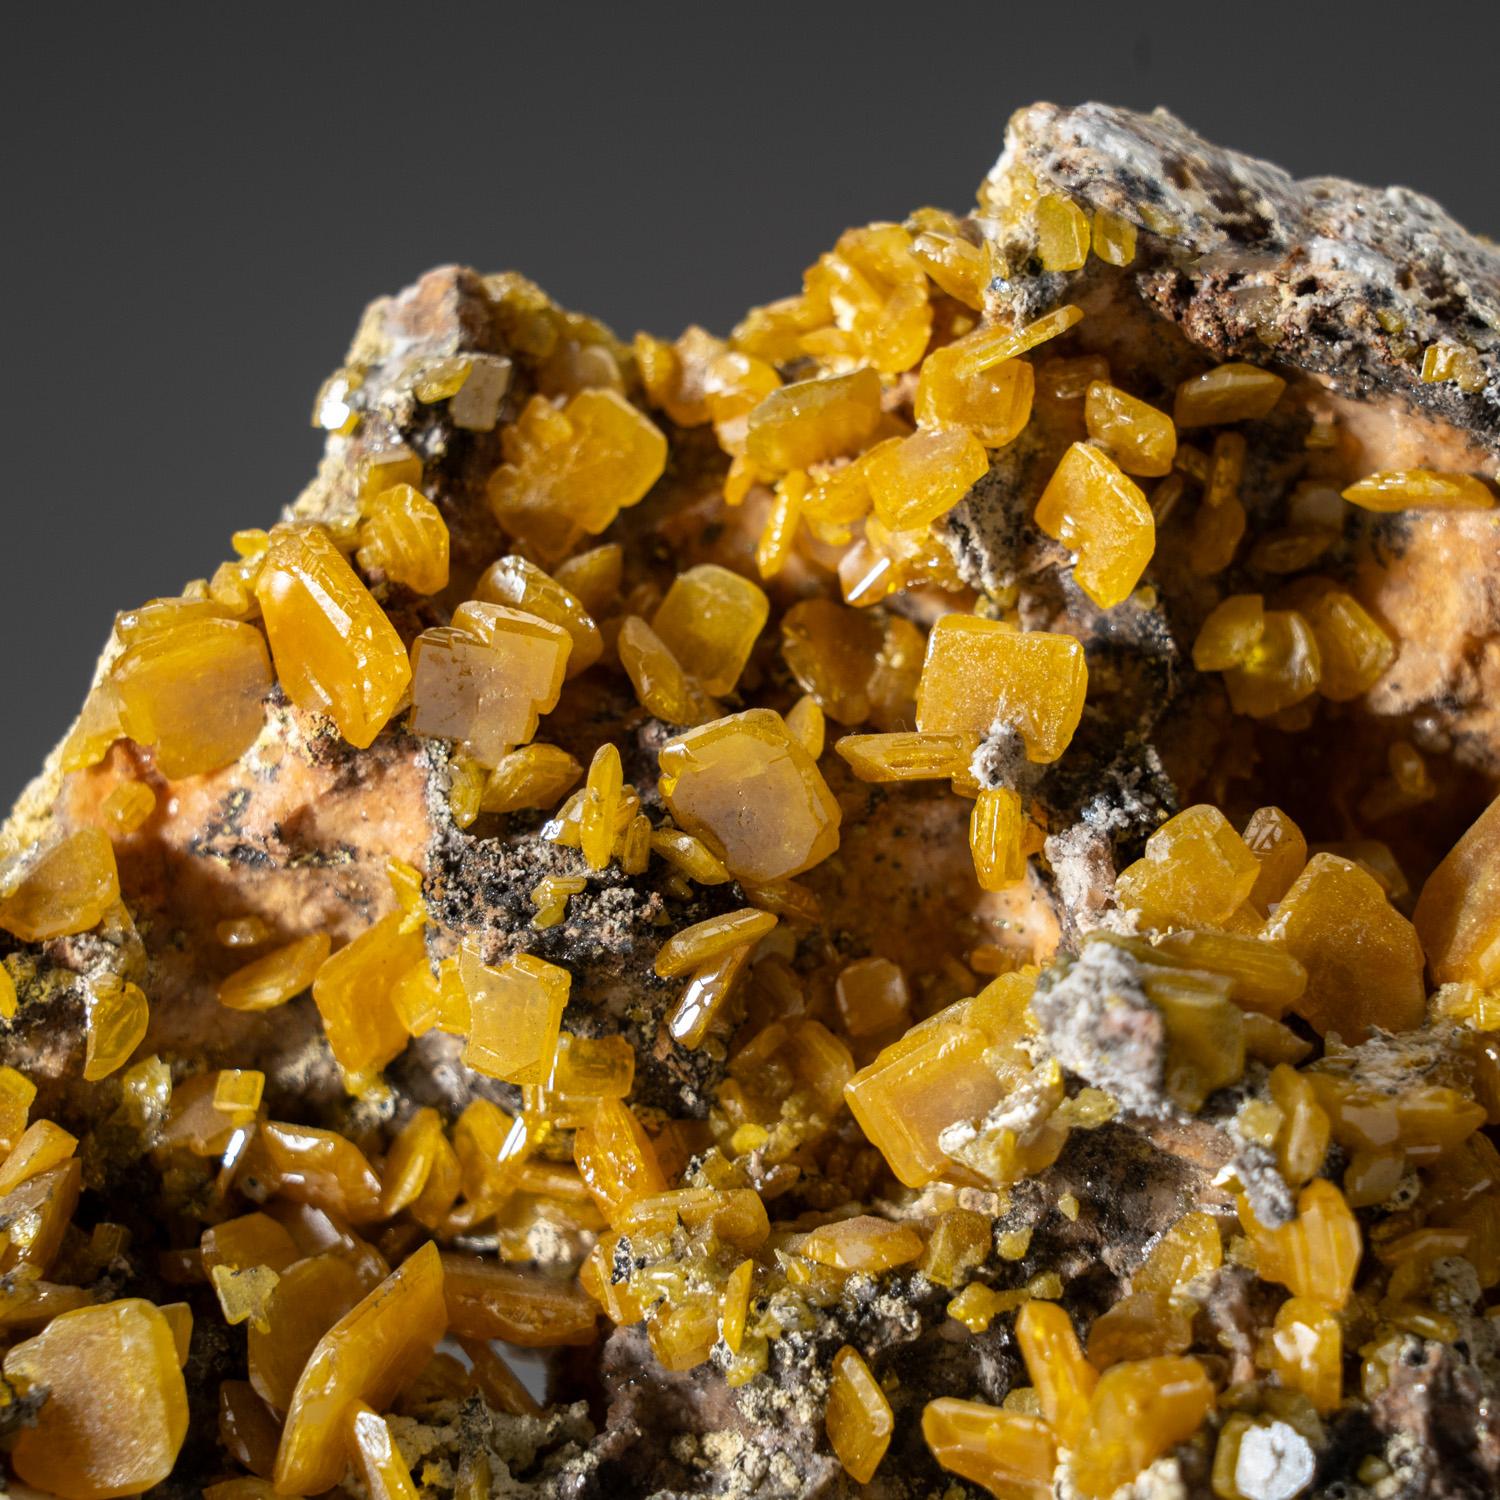 Aus der Touissit-Mine, 21 km SSE von Oujda, Provinz Jerada, Oriental, Marokko

Große Ansammlung durchscheinender gelber Wulfenitkristalle mit Lamellen auf hellbrauner Matrix. Die Wulfenitkristalle haben eine dünne, rechteckige Form, abgeschrägte